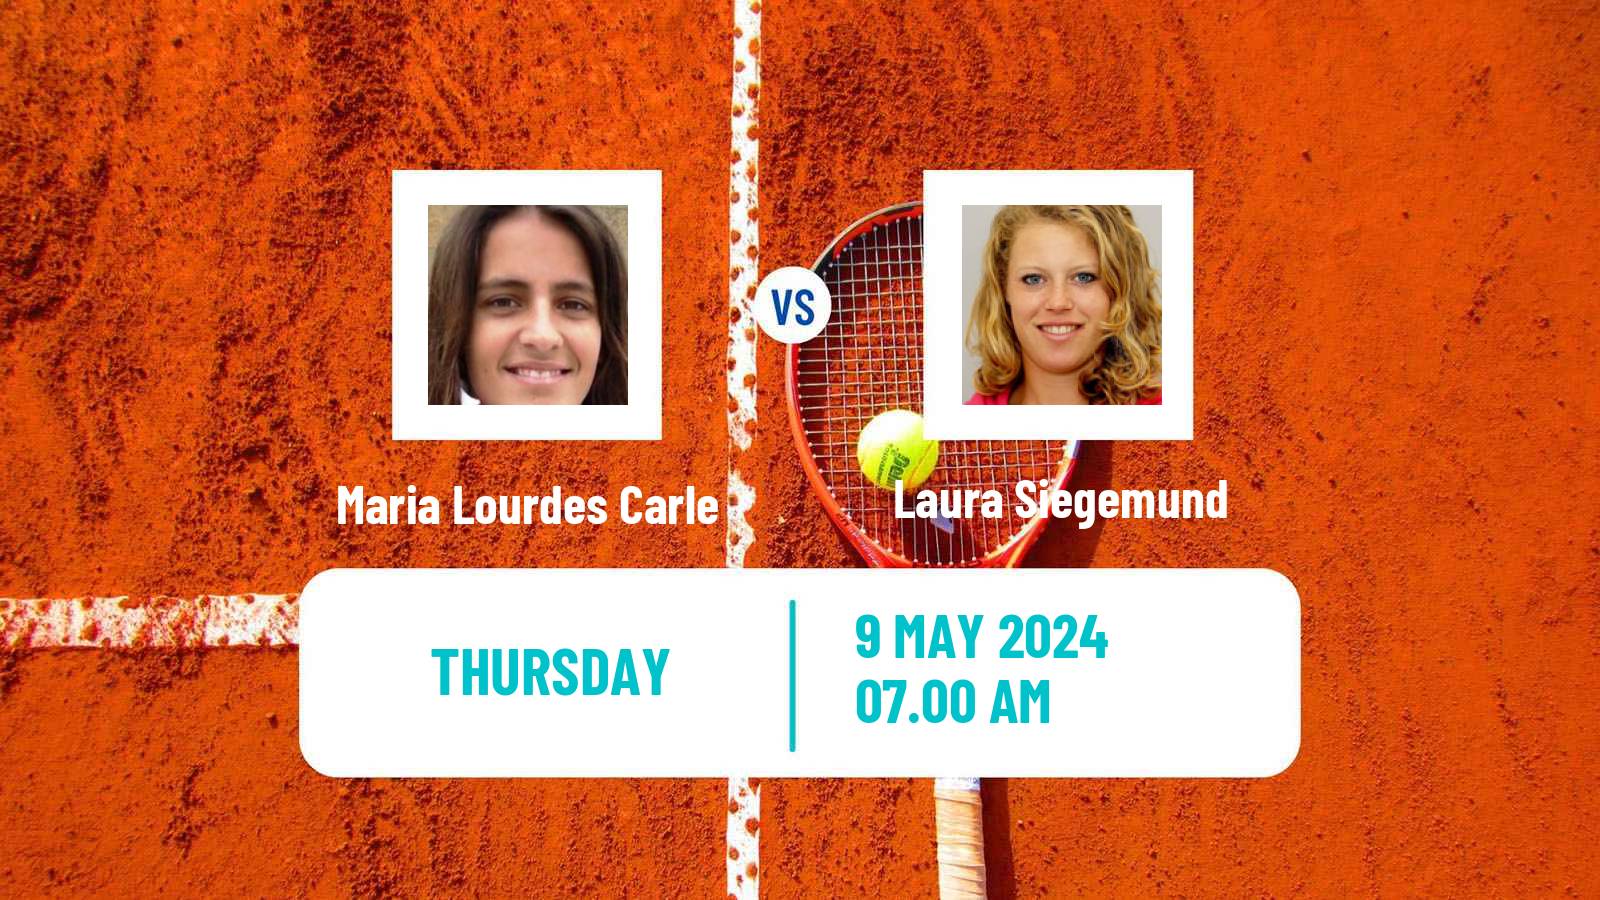 Tennis WTA Roma Maria Lourdes Carle - Laura Siegemund